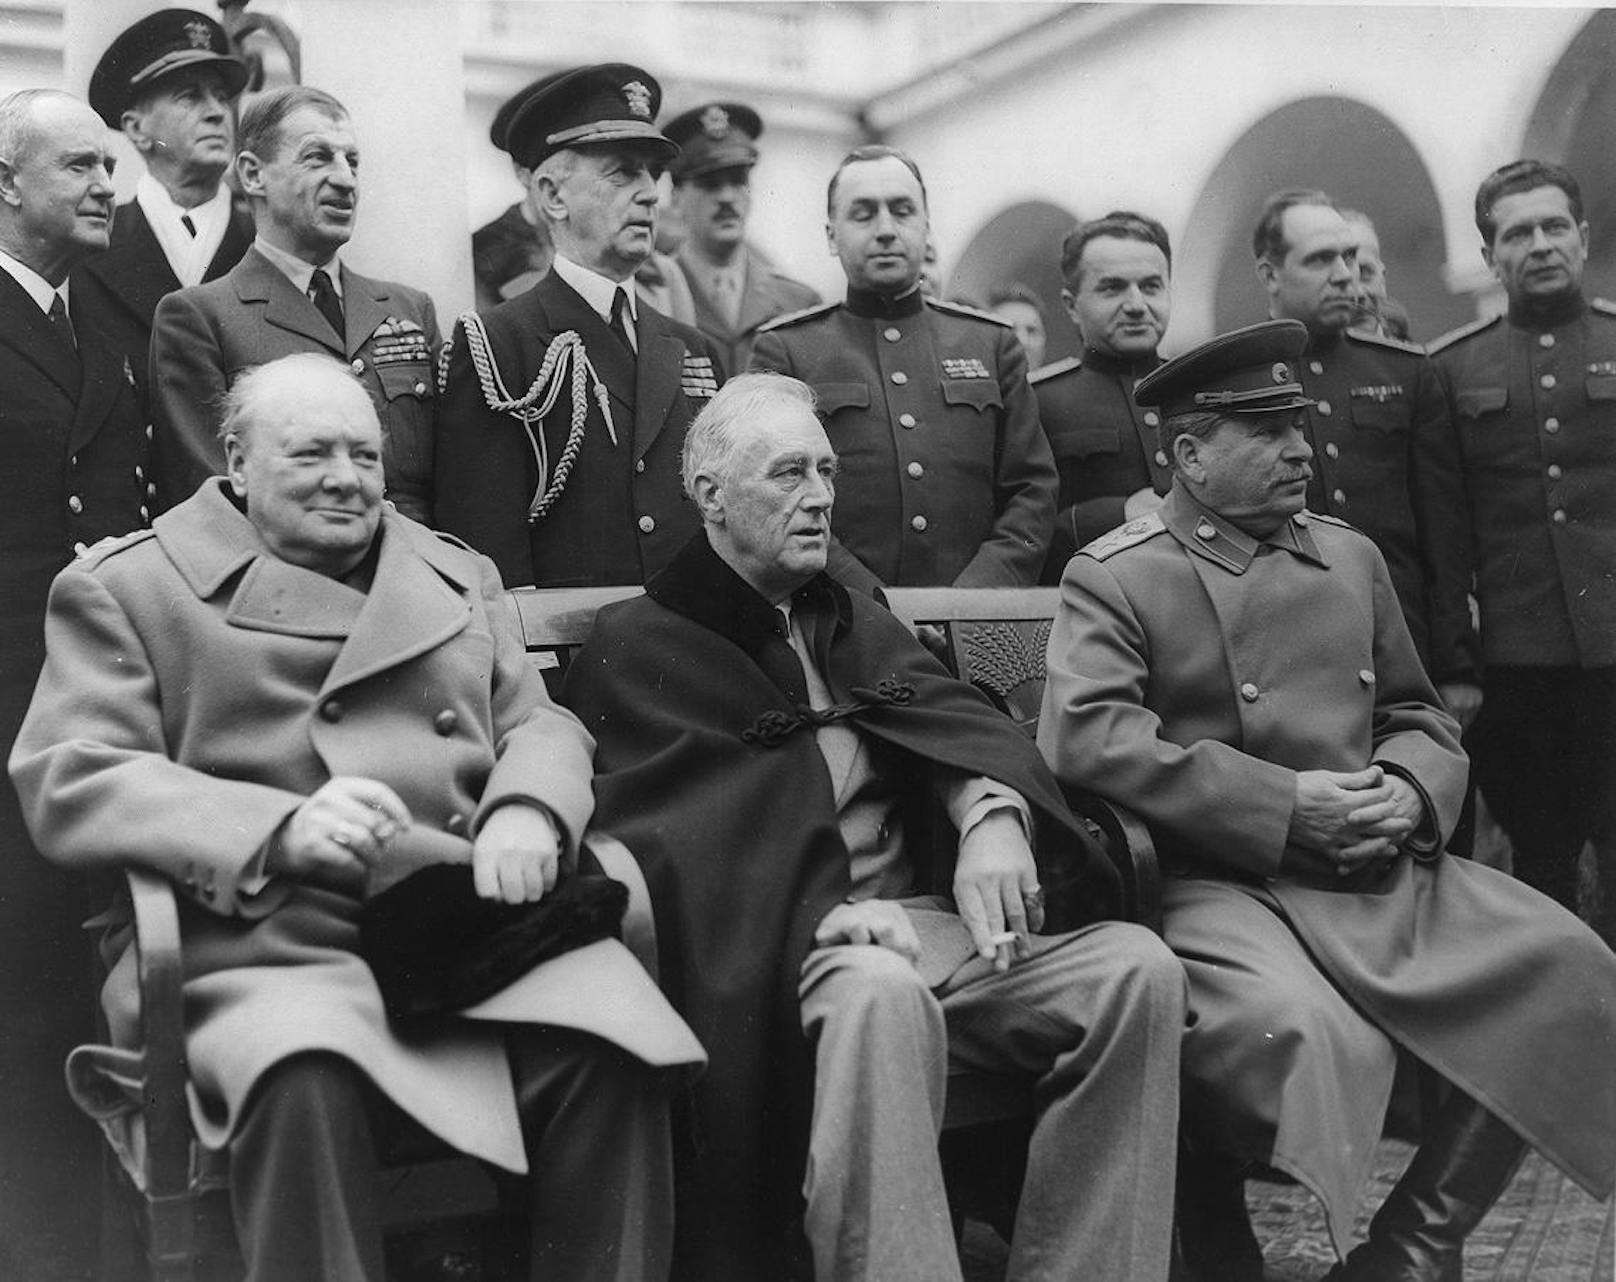 Winston Churchill neben US-Präsident Theodore Roosevelt und Russlands Diktator Josef Stalin

Blödsinn. Churchill war Zeit seines Lebens passionierter Reiter. Ein Satz über Sport, den Churchill wirklich gesagt hat: "Keine Stunde Lebenszeit, die man im Sattel verbringt, ist vergeudet."